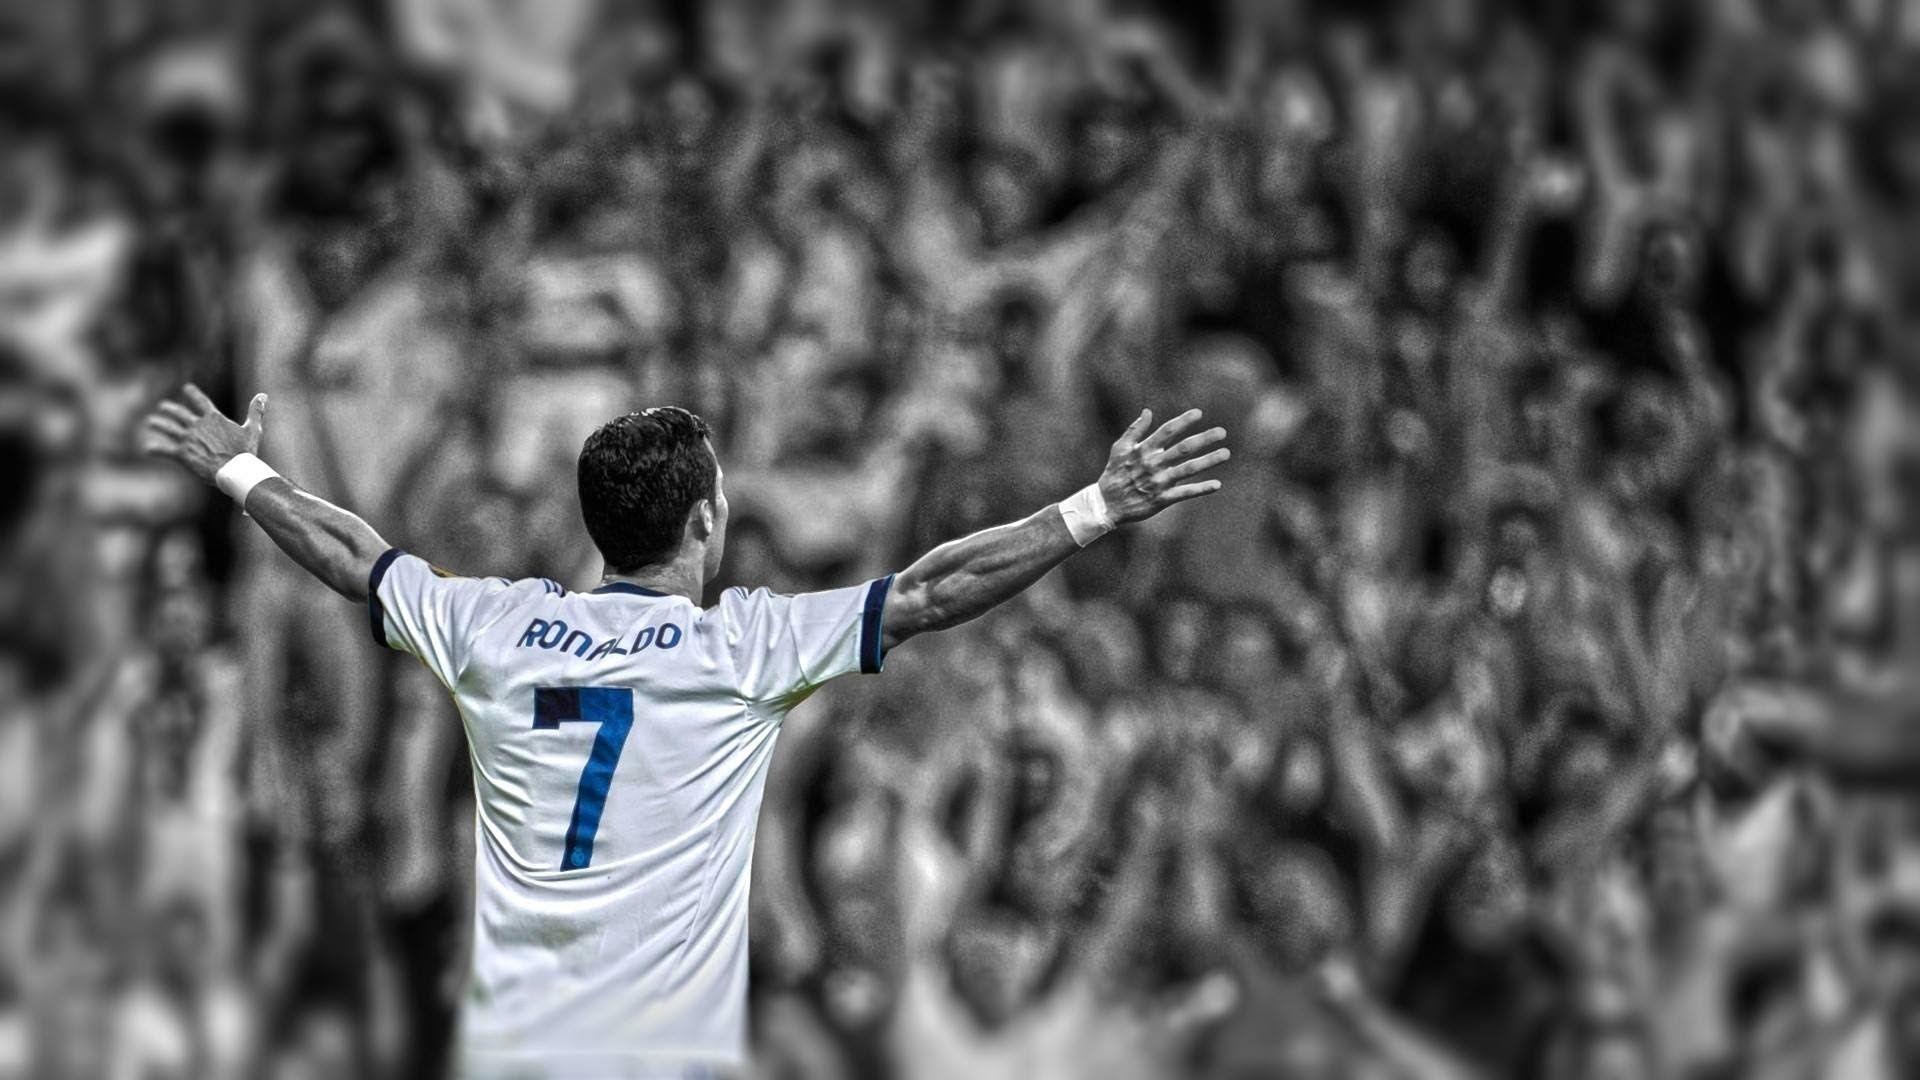 Real Madrid - ♛ Kings of the World ♛ Santaflow Madrid